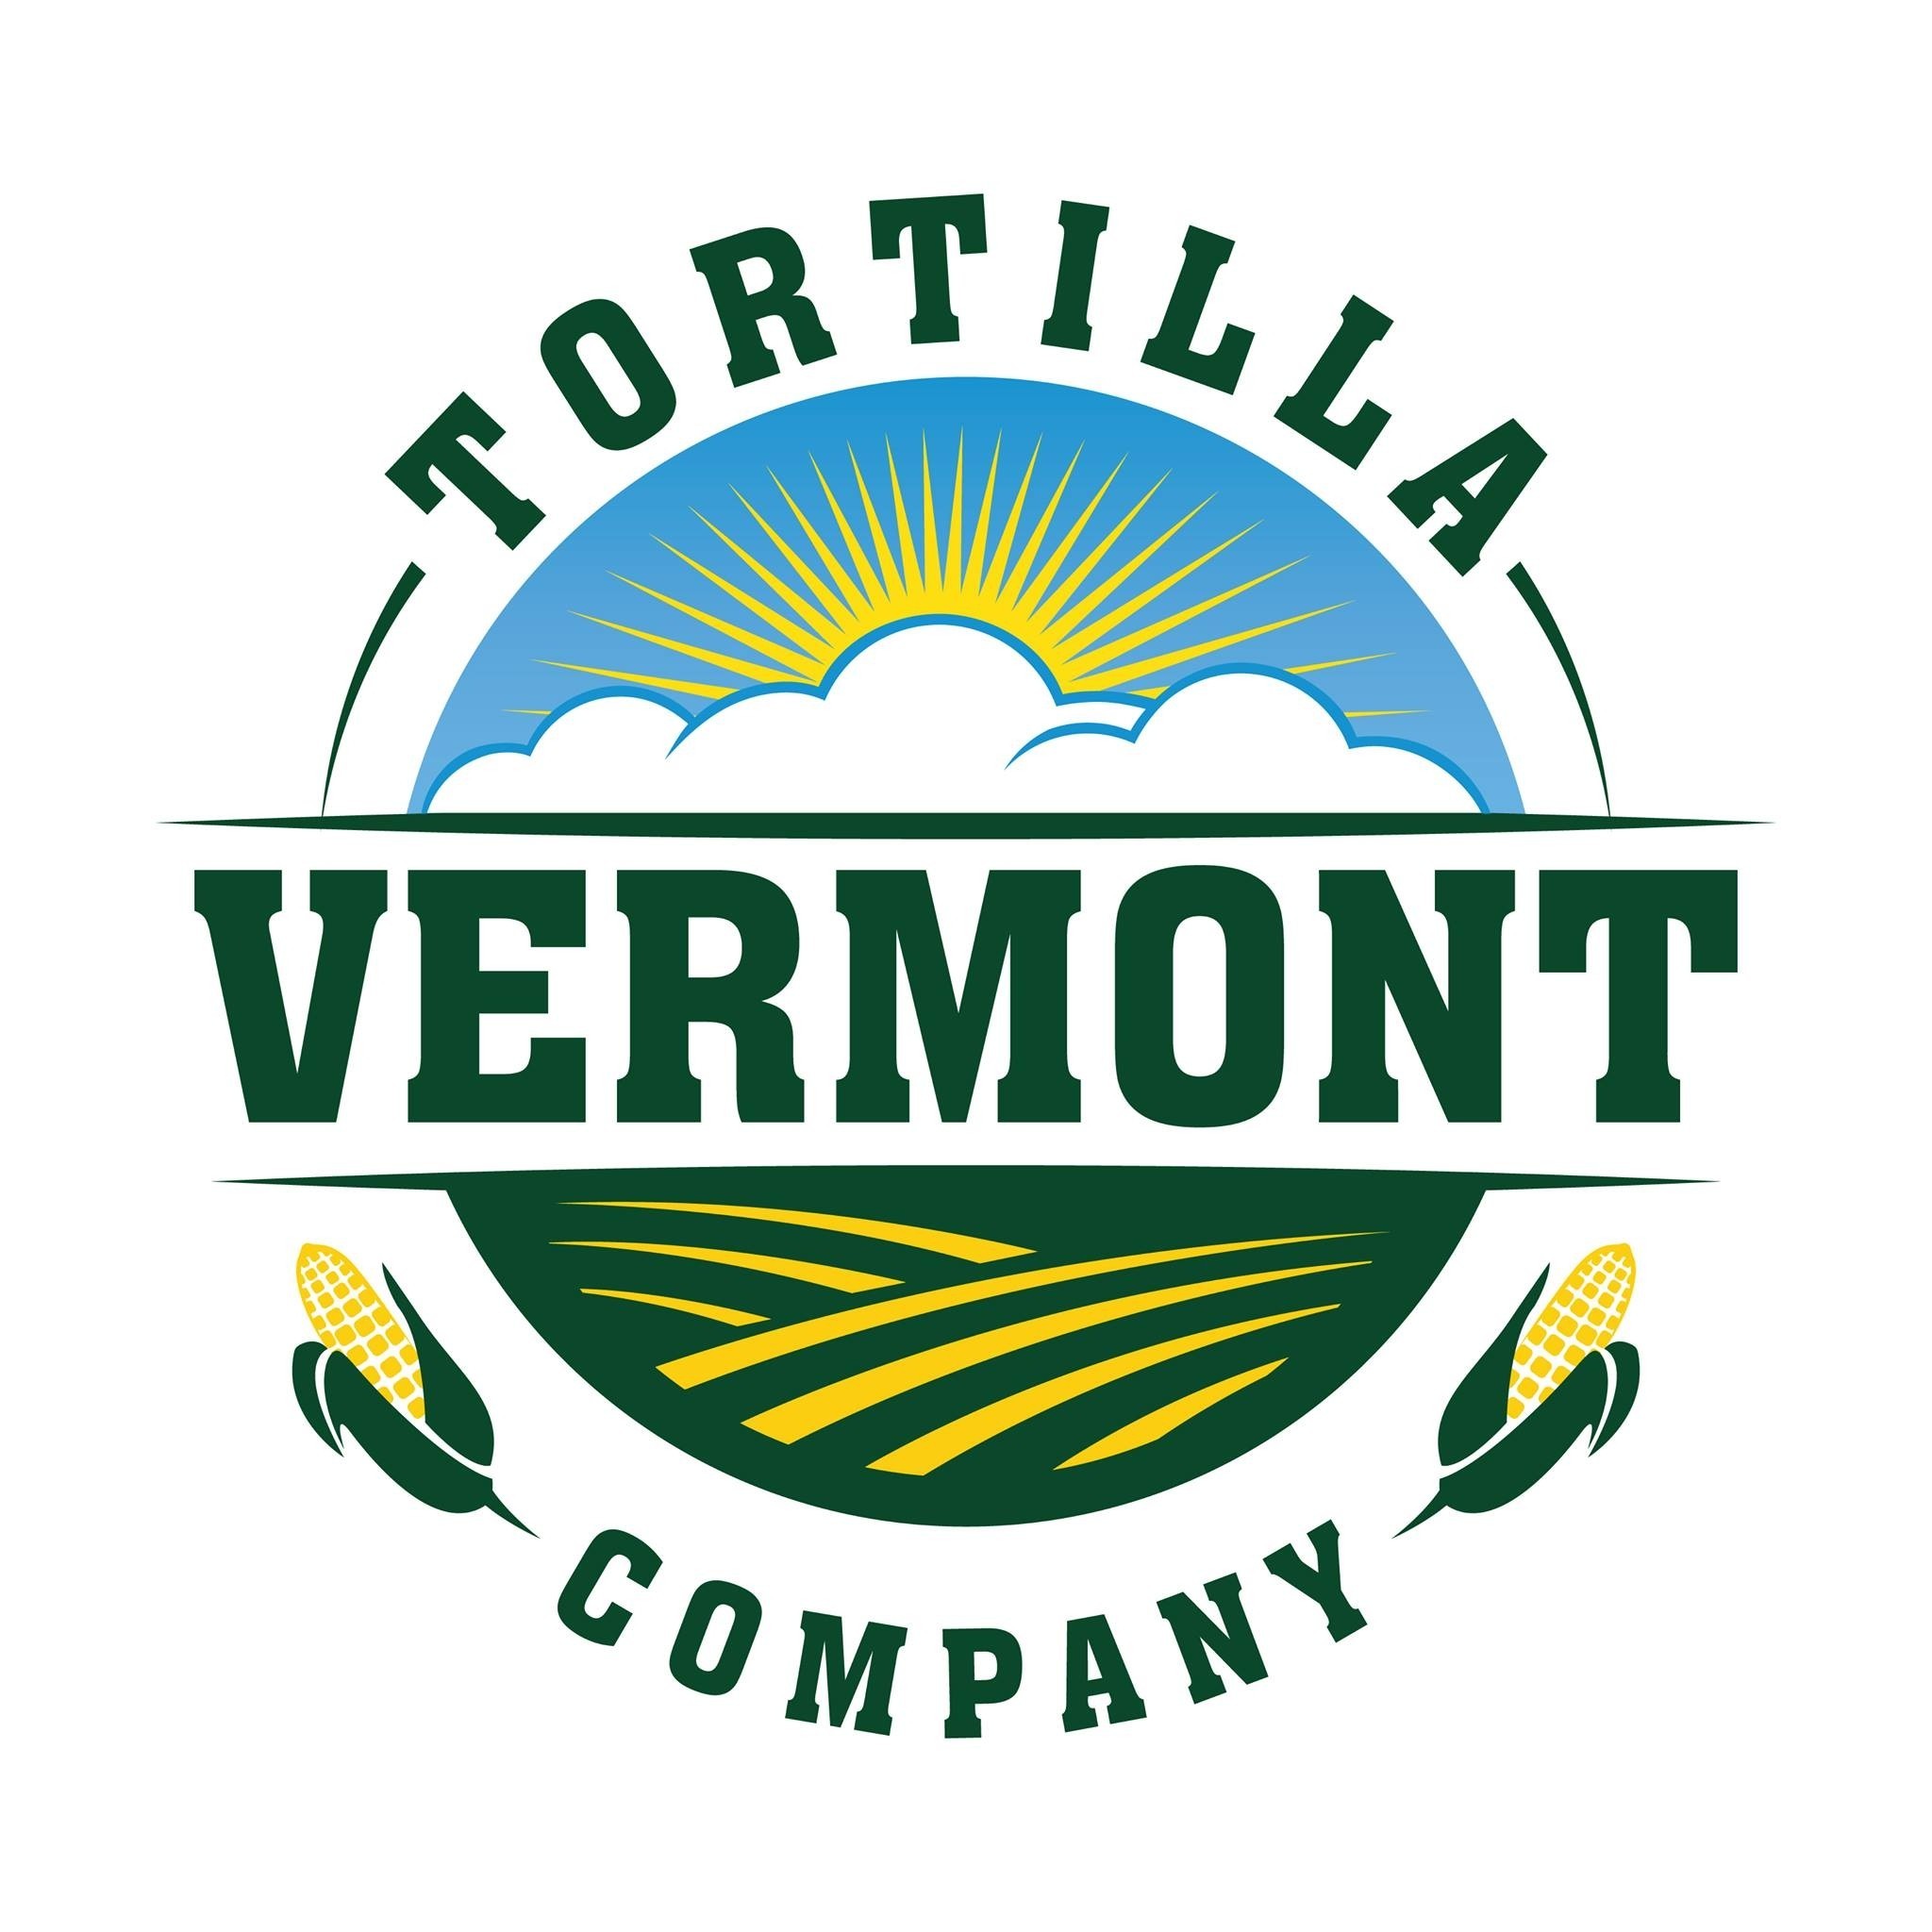 Vermont Tortilla Company